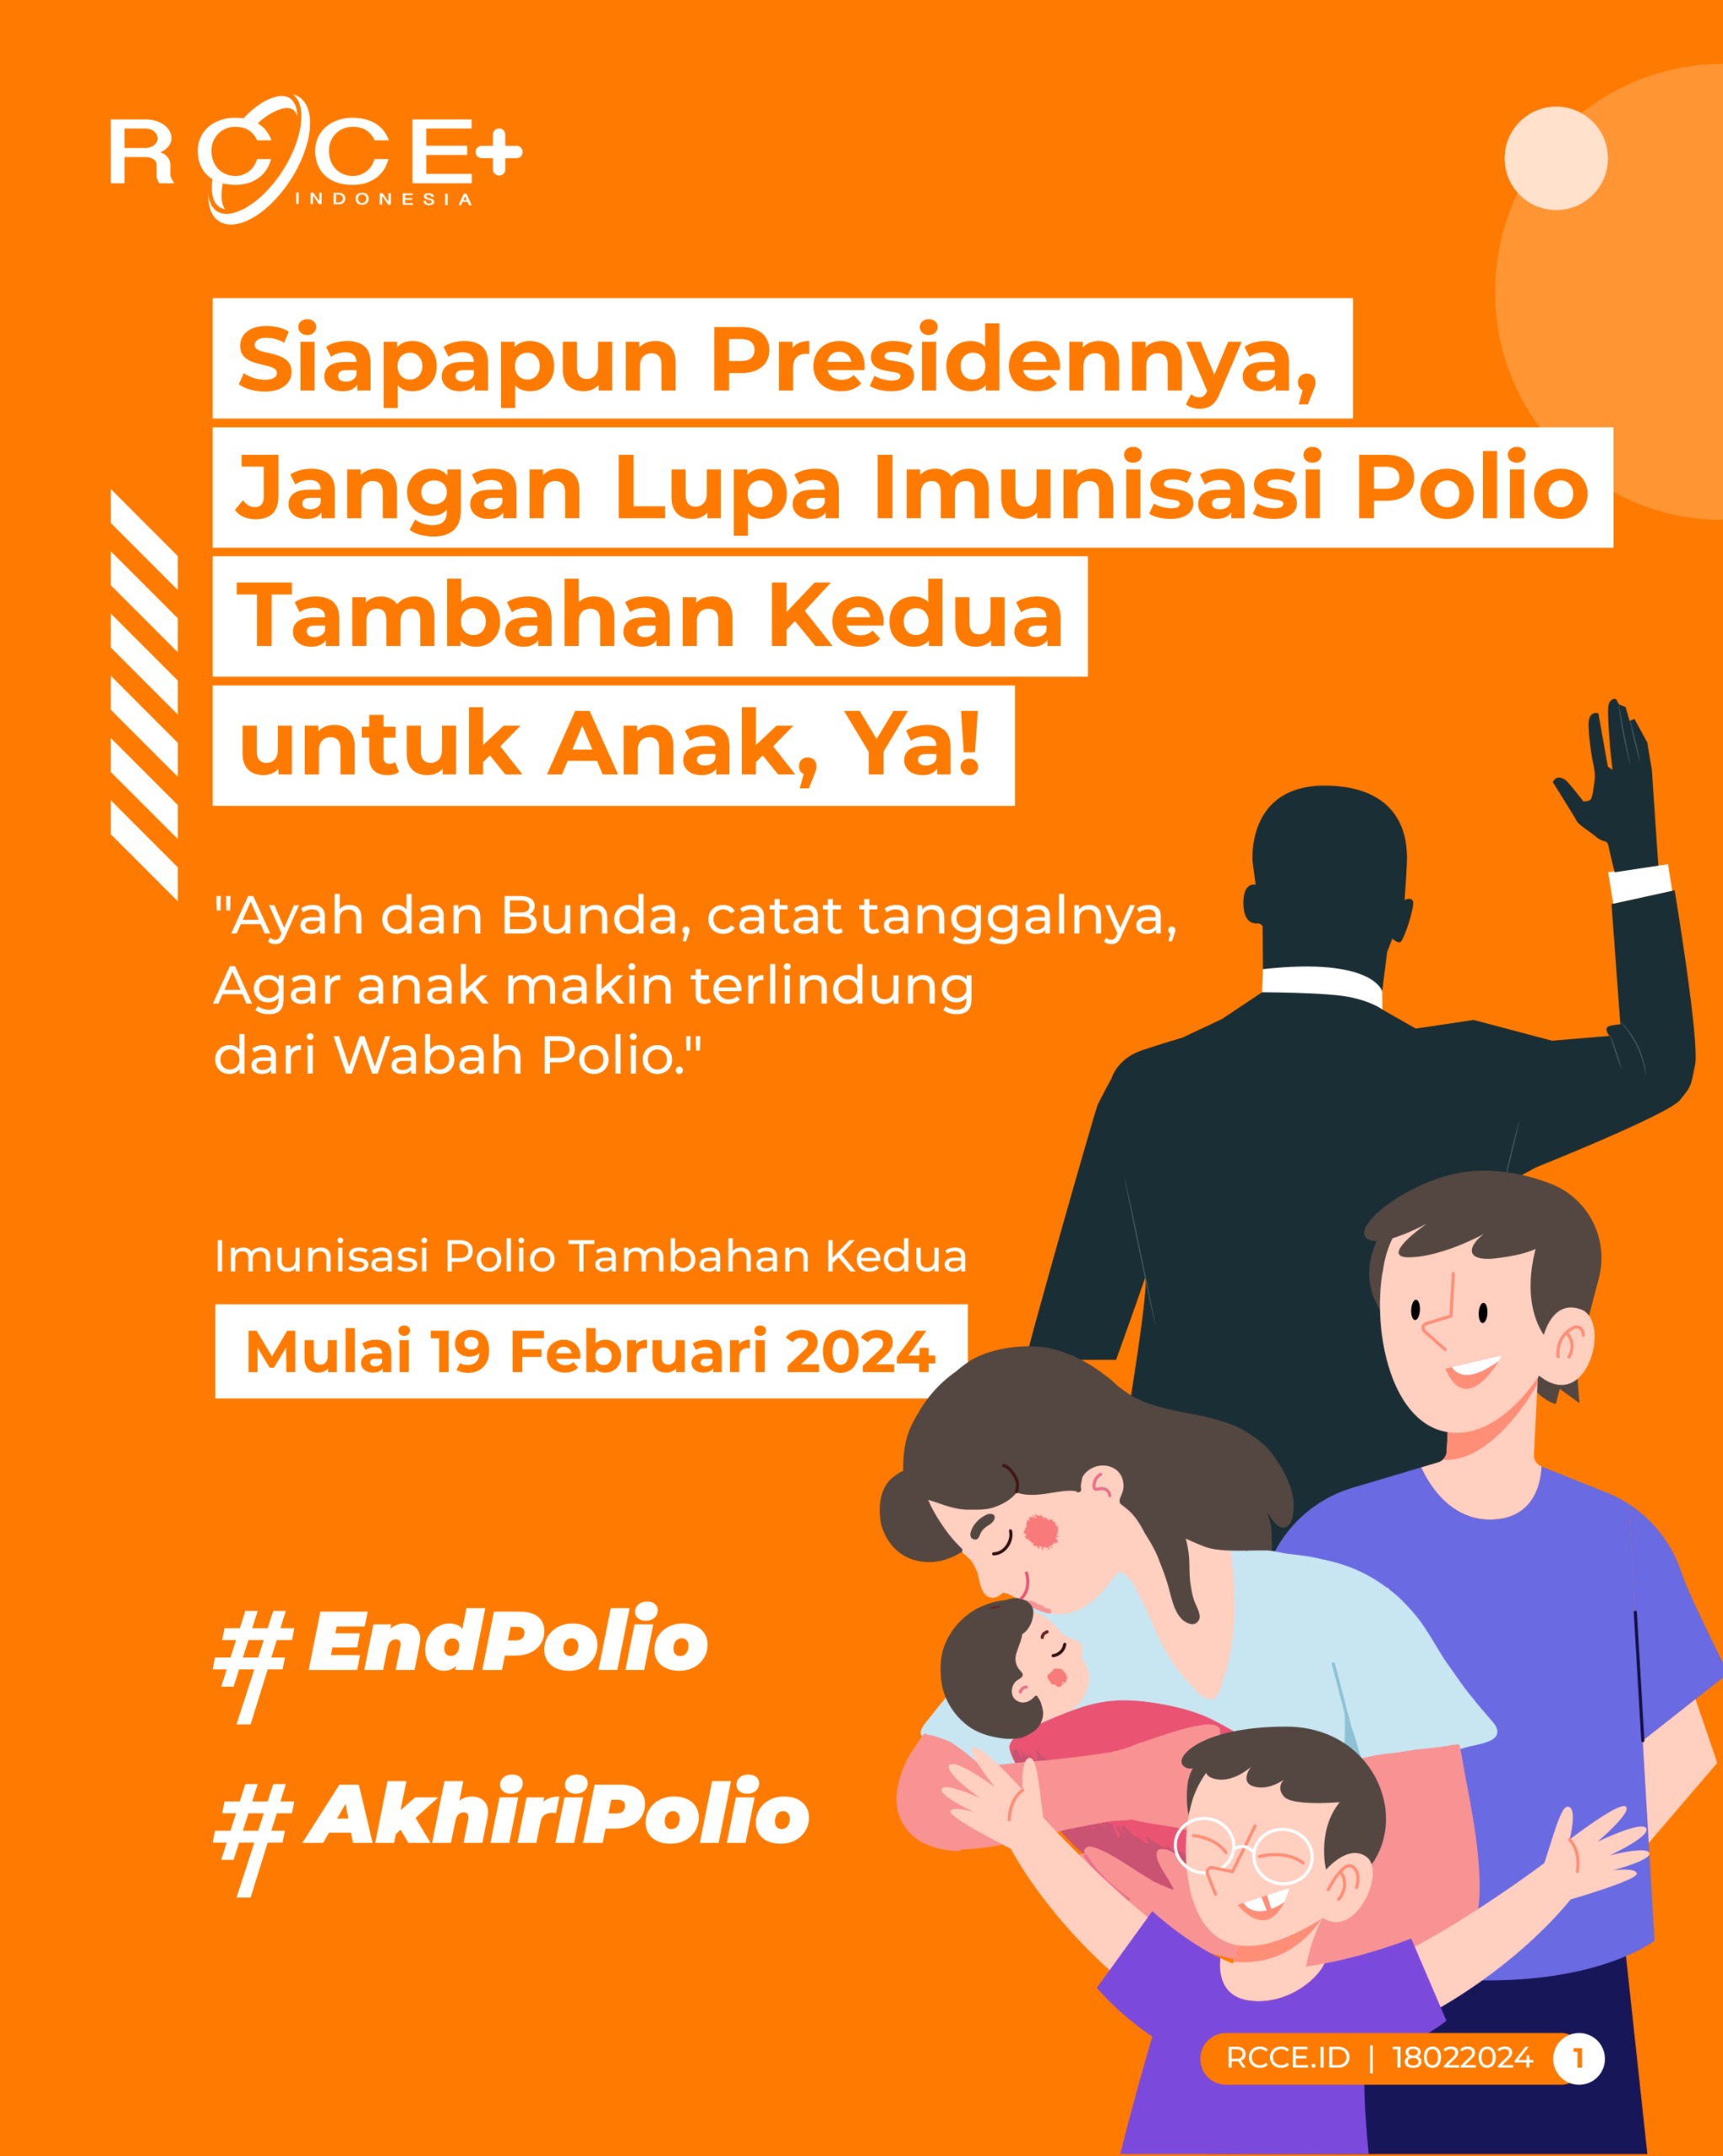 Imunisasi Polio Tambahan Kedua mulai 19 Februari 2024